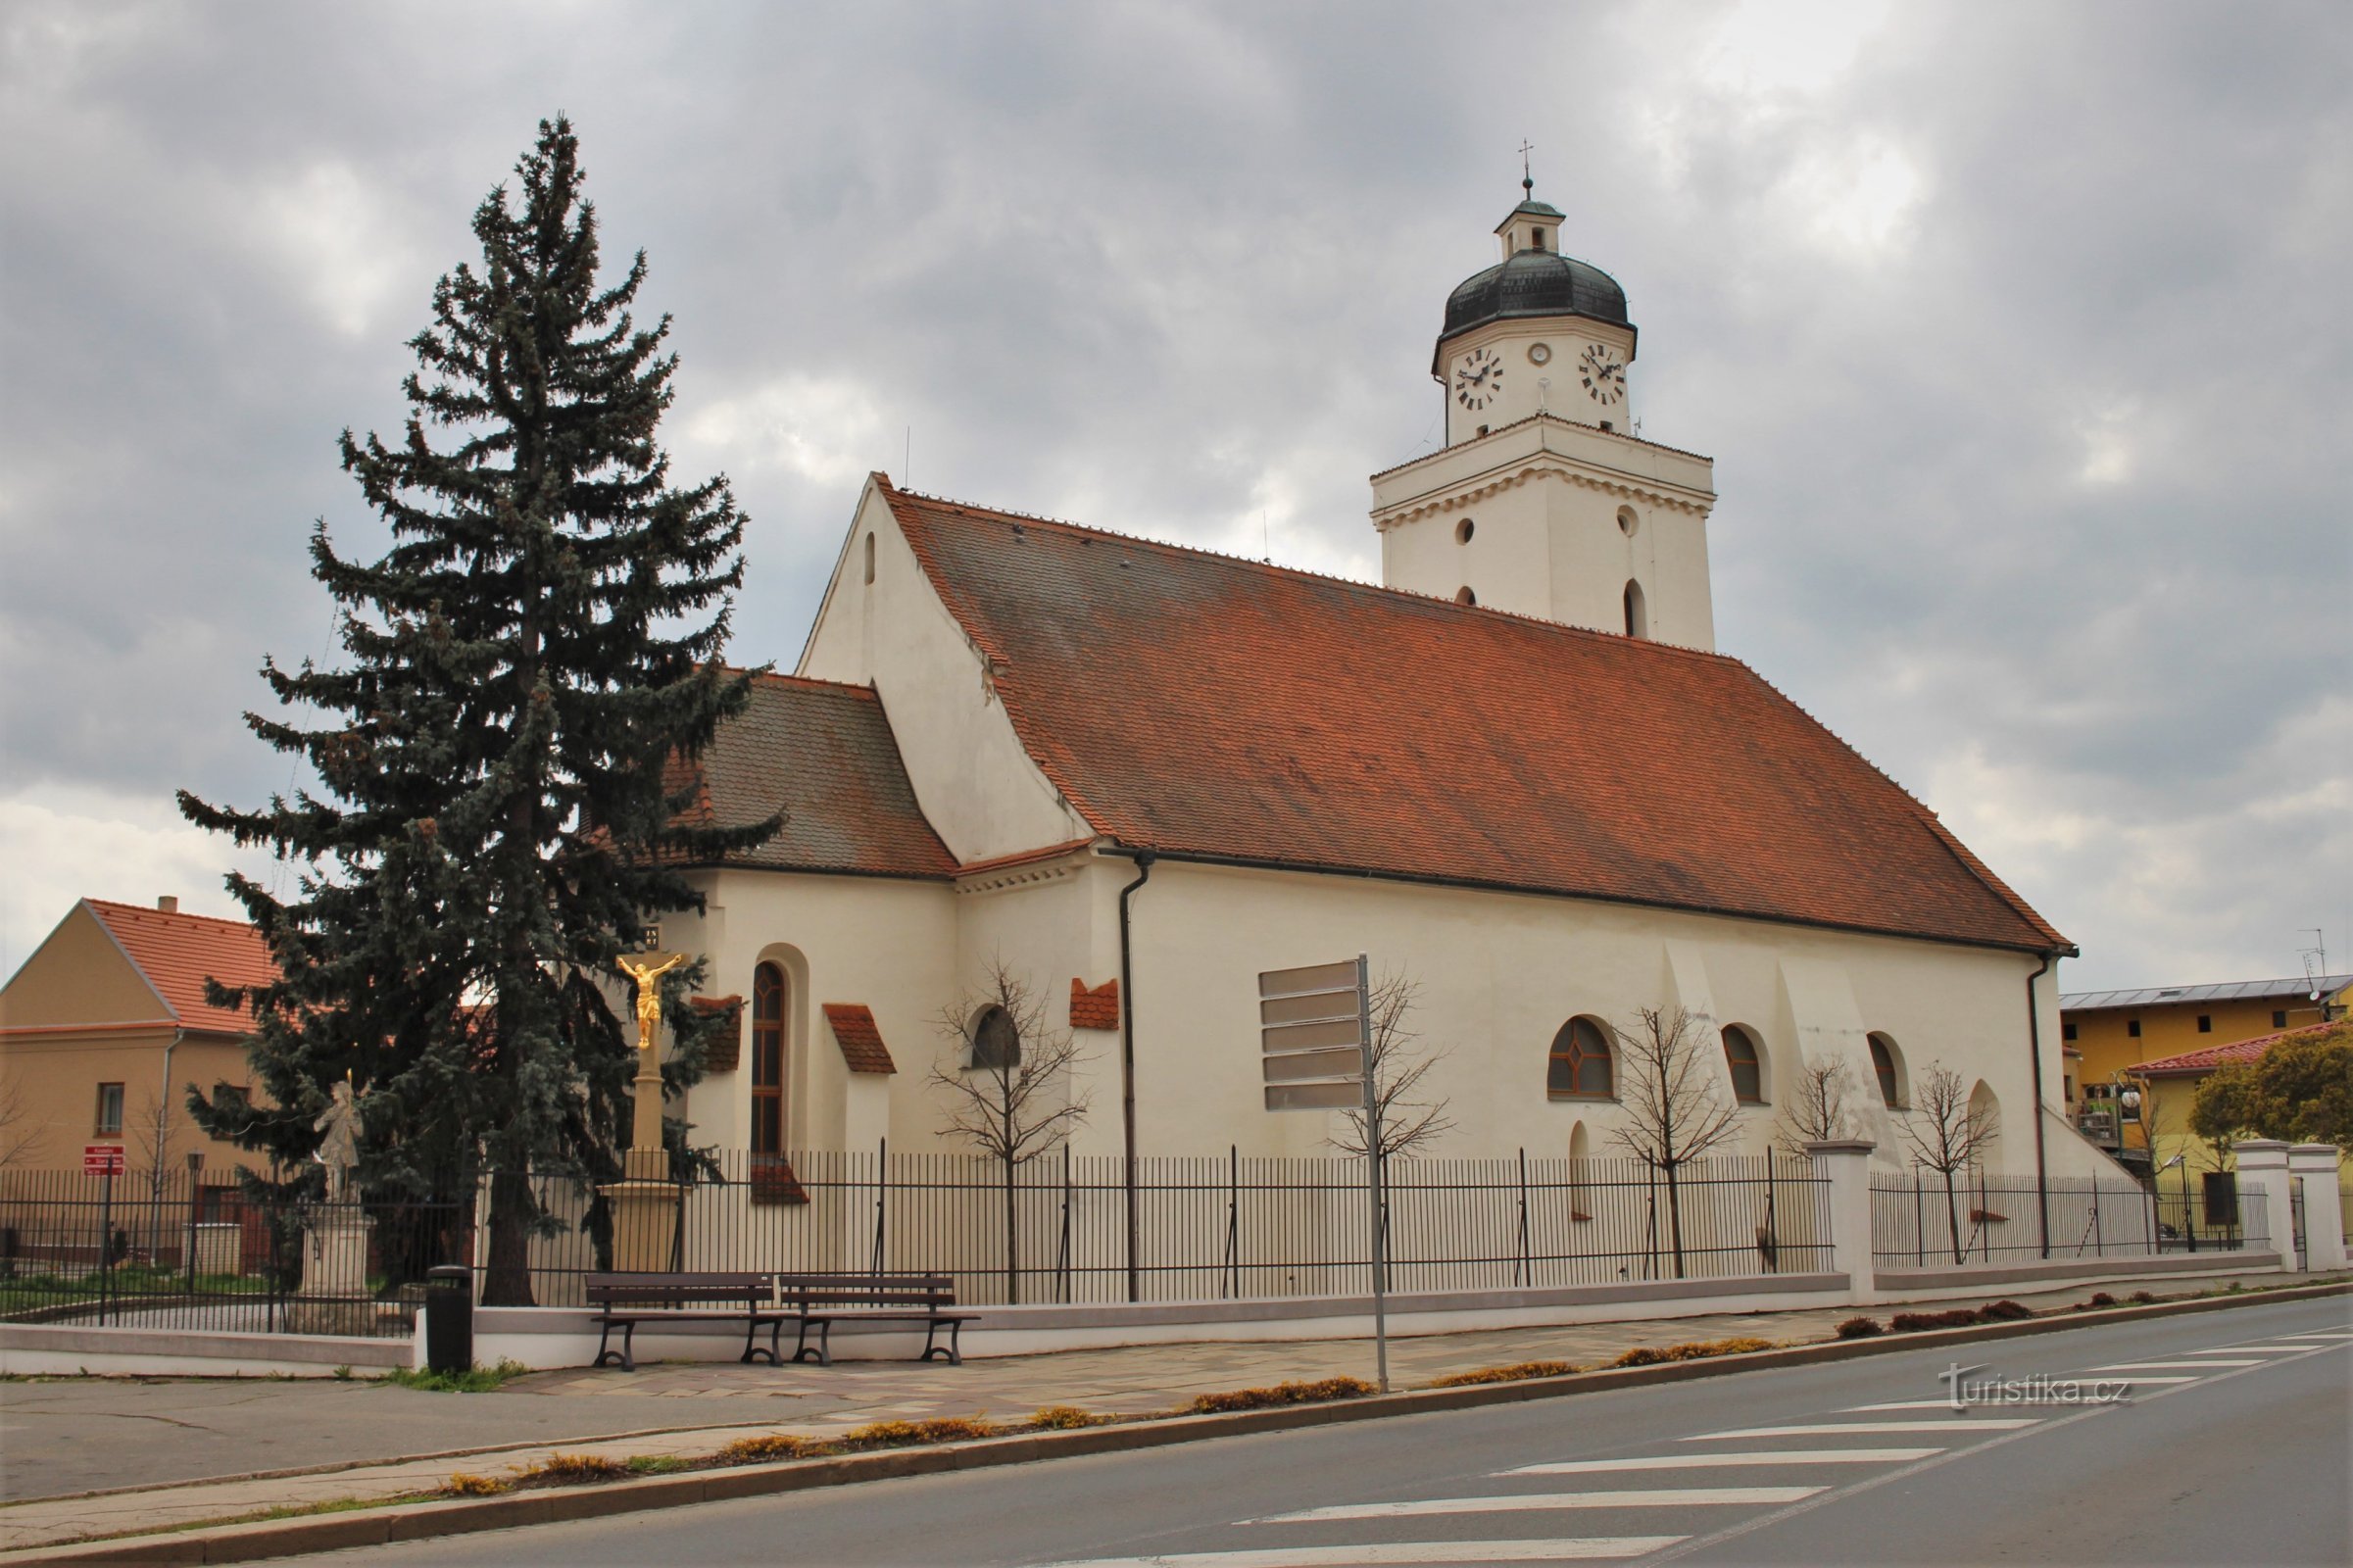 No centro, a igreja românica de St. Jacó, o Velho